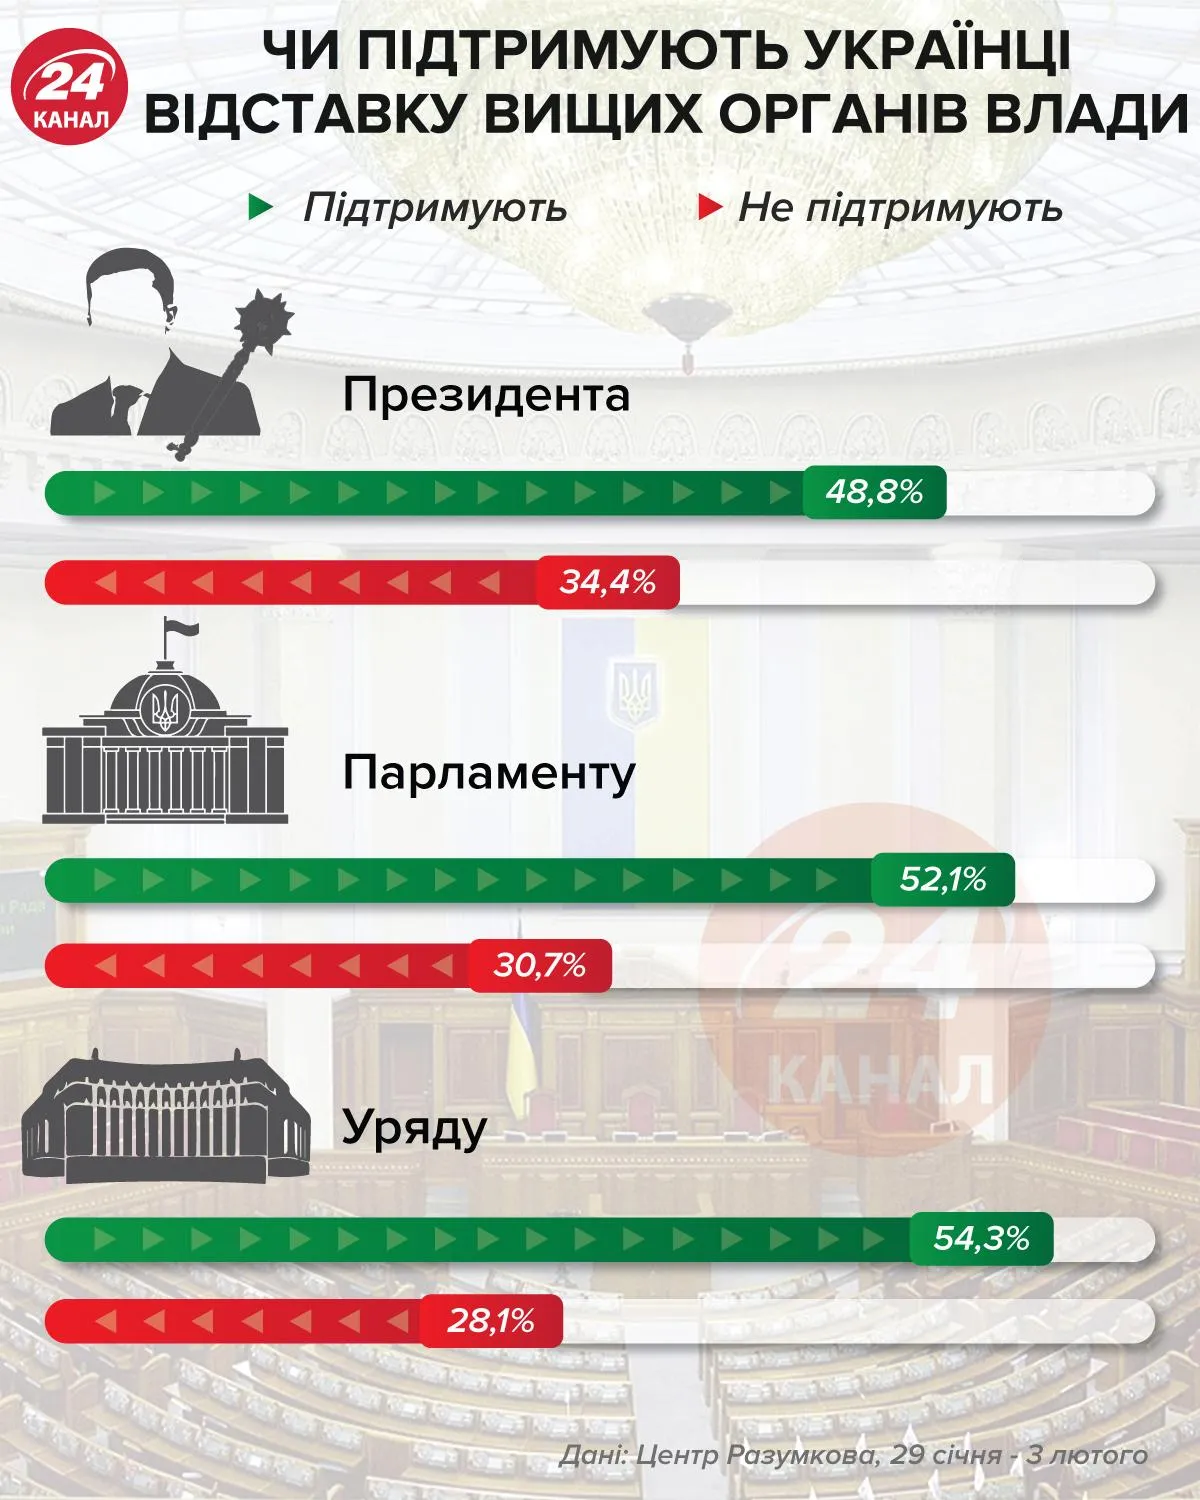 Поддерживают ли украинцы отставку высших органов власти / Инфографика 24 канала